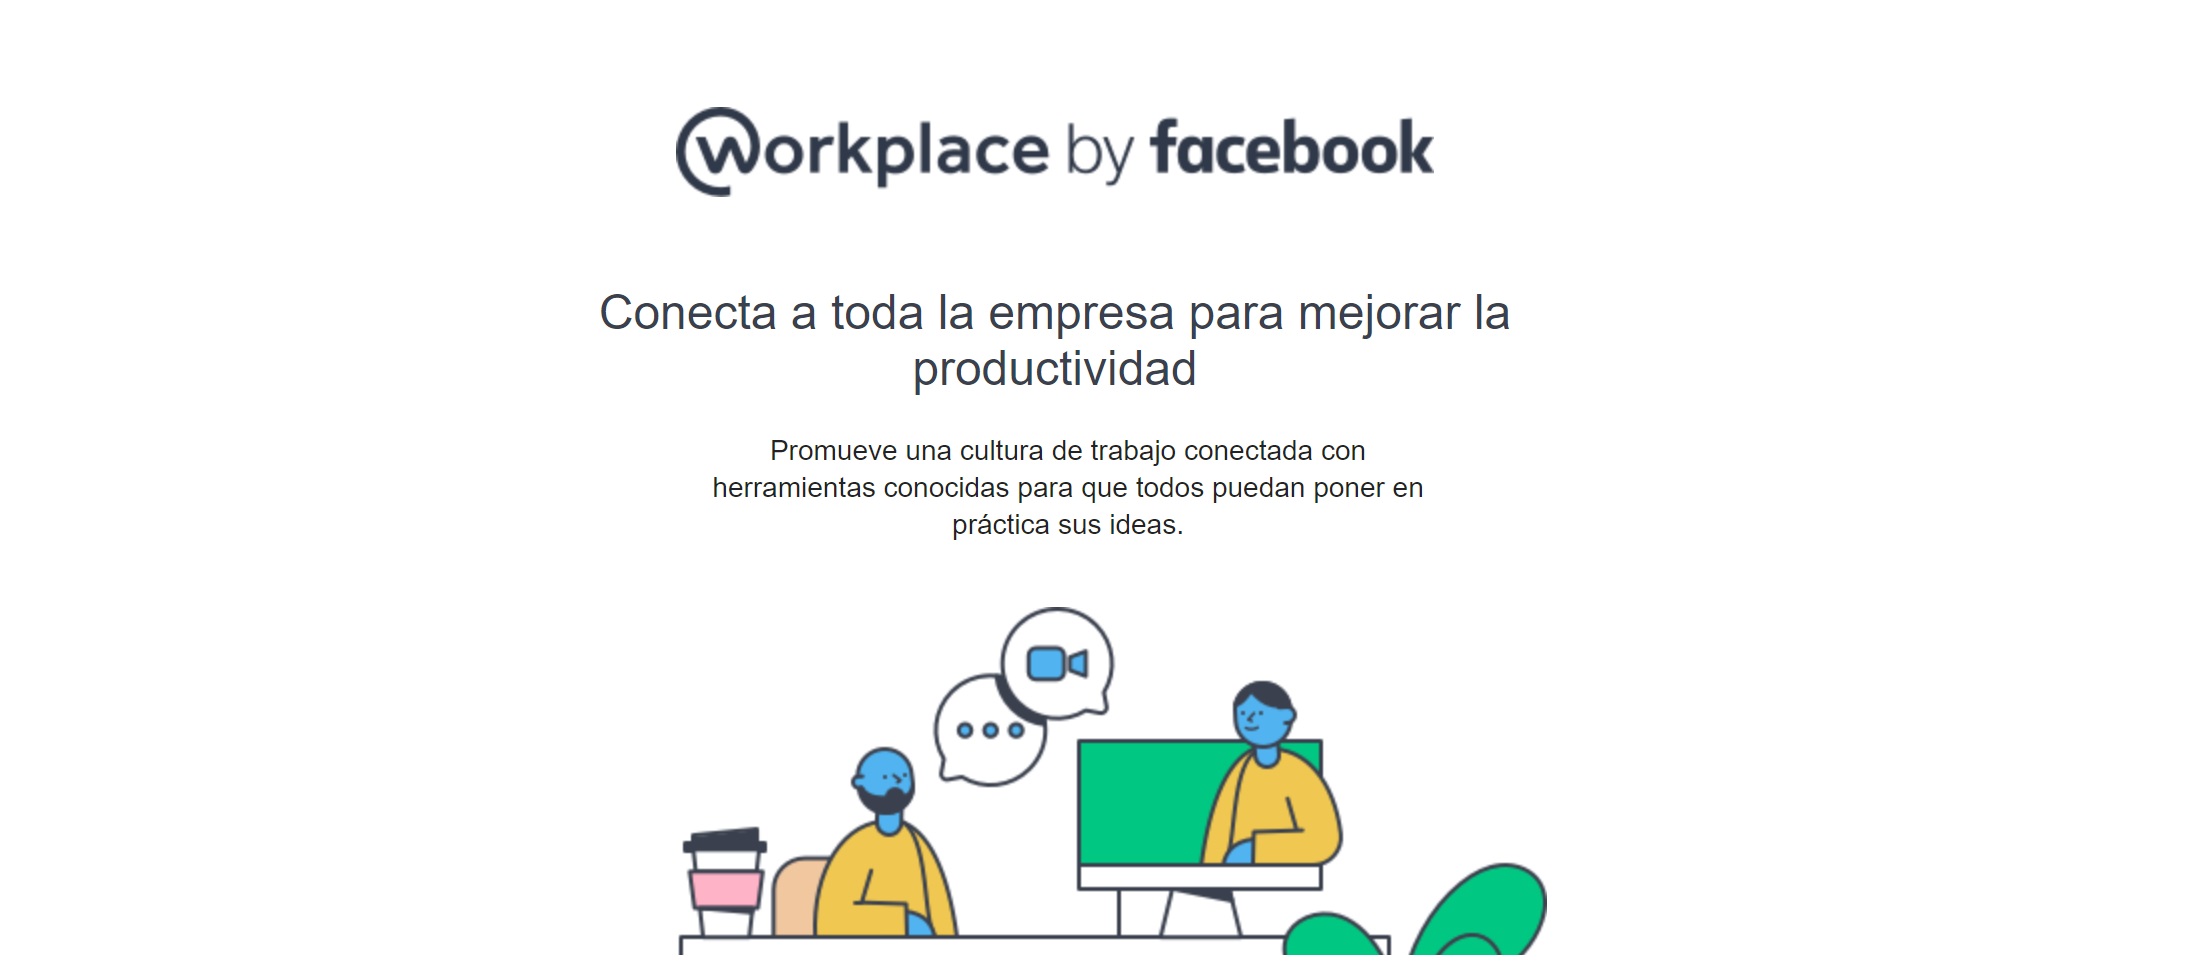 workplace by facebook, programapublicidad,